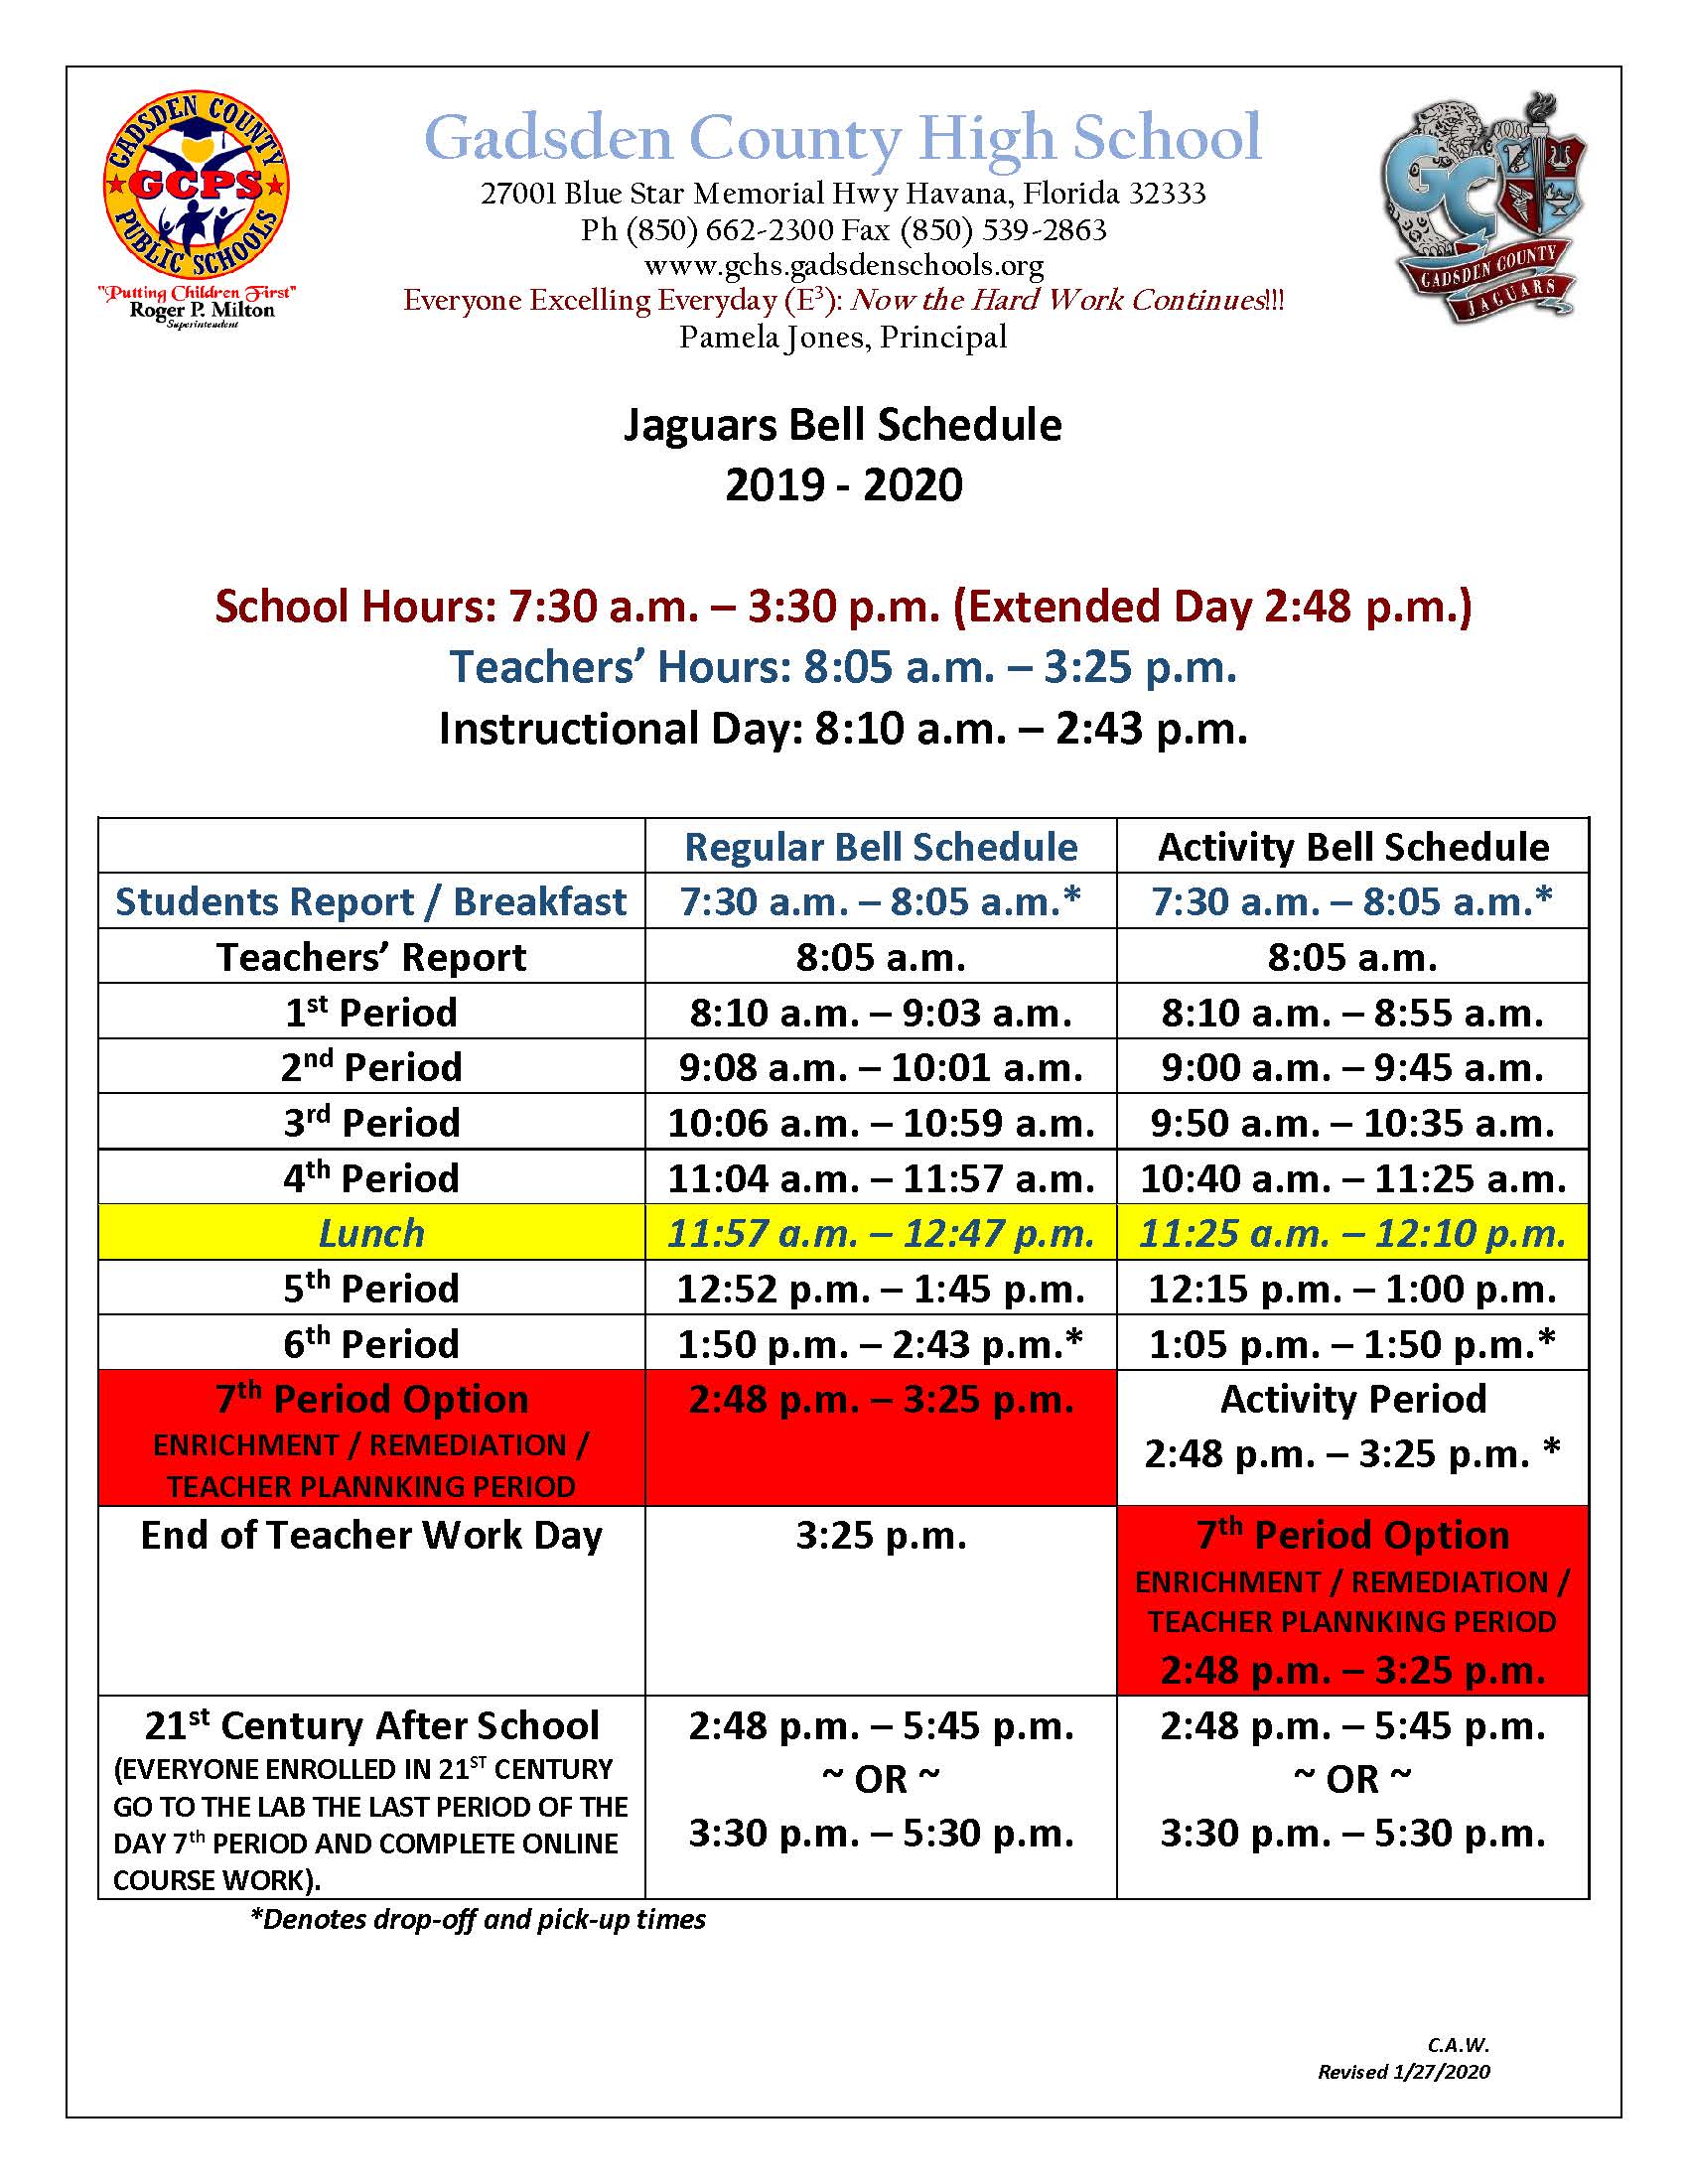 Gadsden County High School Schedule